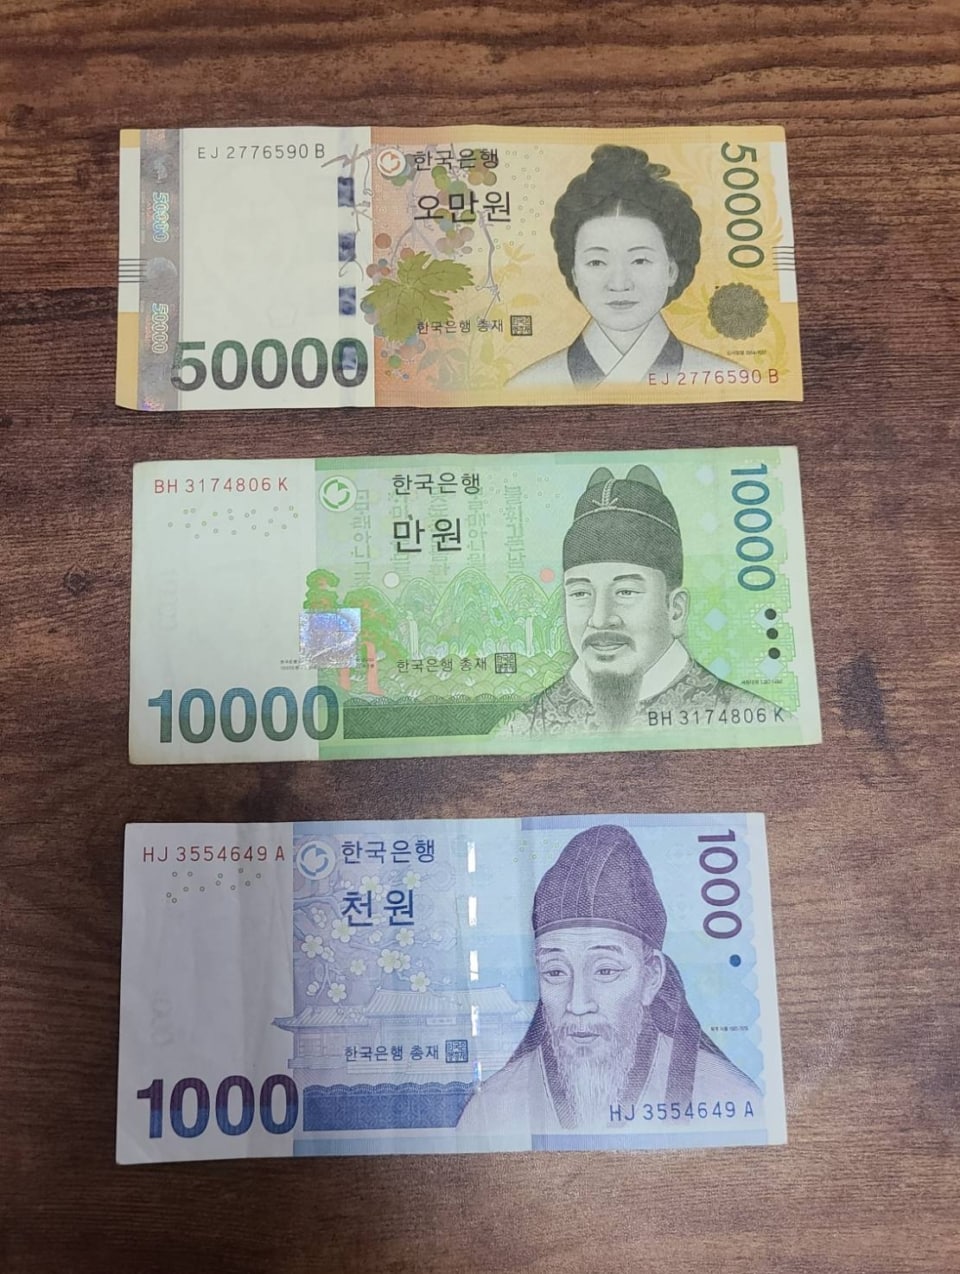 韓国の紙幣はこちら。一番上の₩50,000＝日本円にすると5千円札の感覚。日本における1万円札はなく、50,000ウォン札×2枚と考えつつ、渡航時のレートをしっかりチェックしてくださいね。